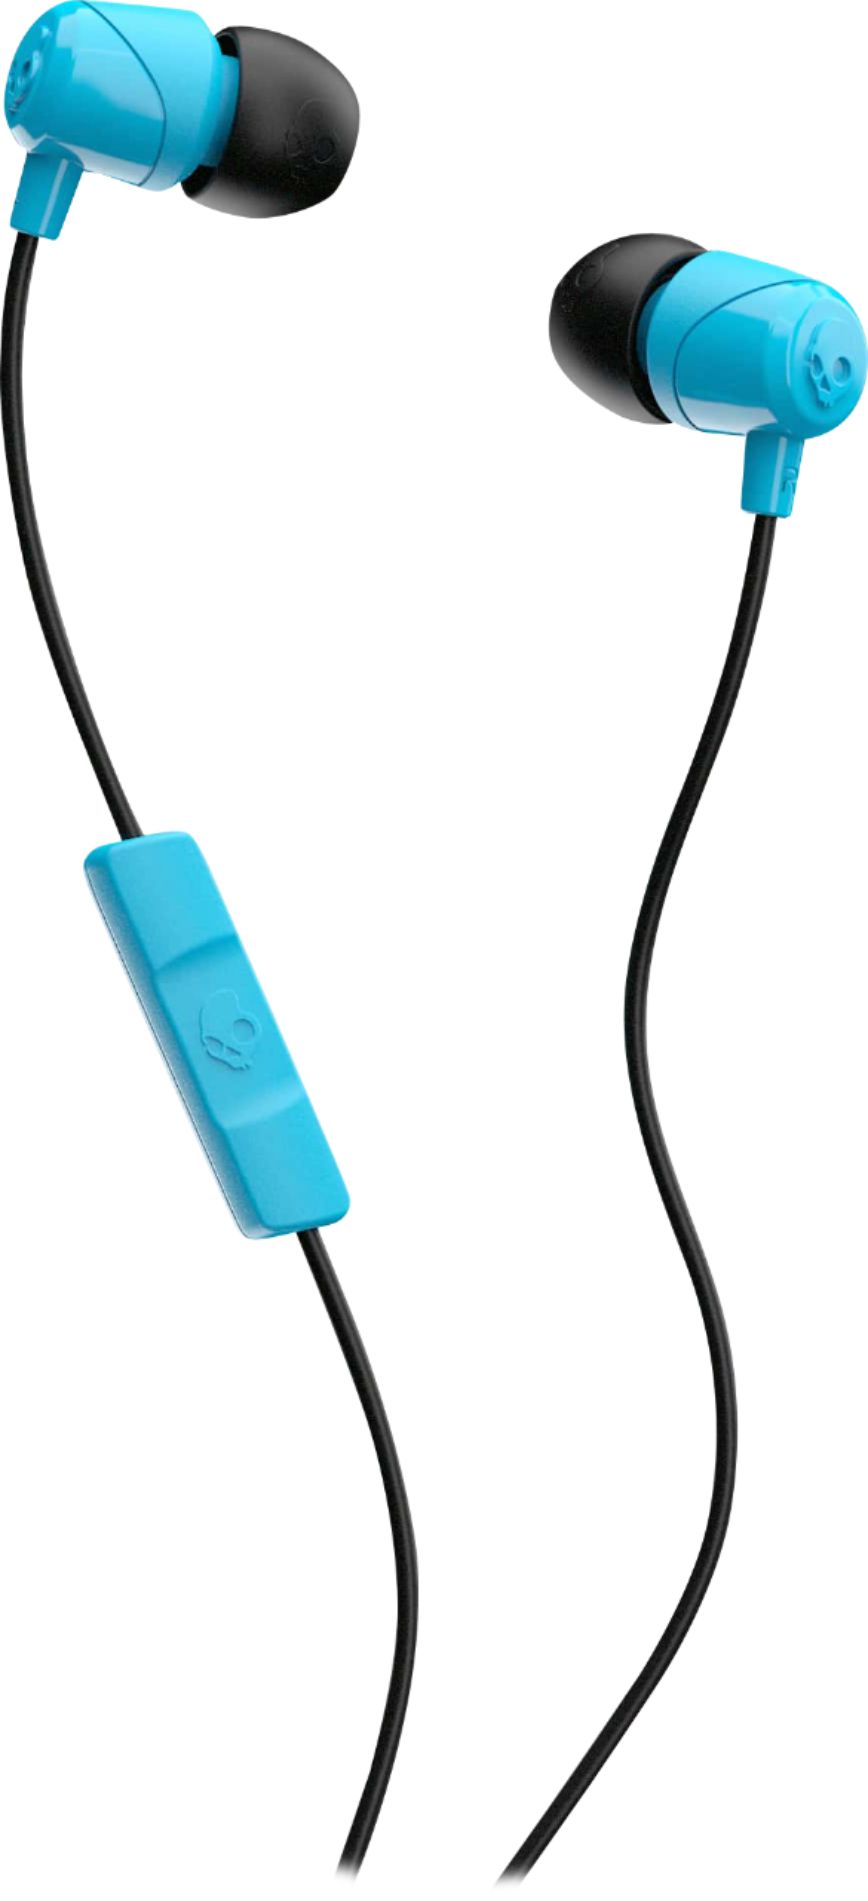 Sunset blue/black Skullcandy JIB In-Ear Wired Earbuds Headphones w/Mic 